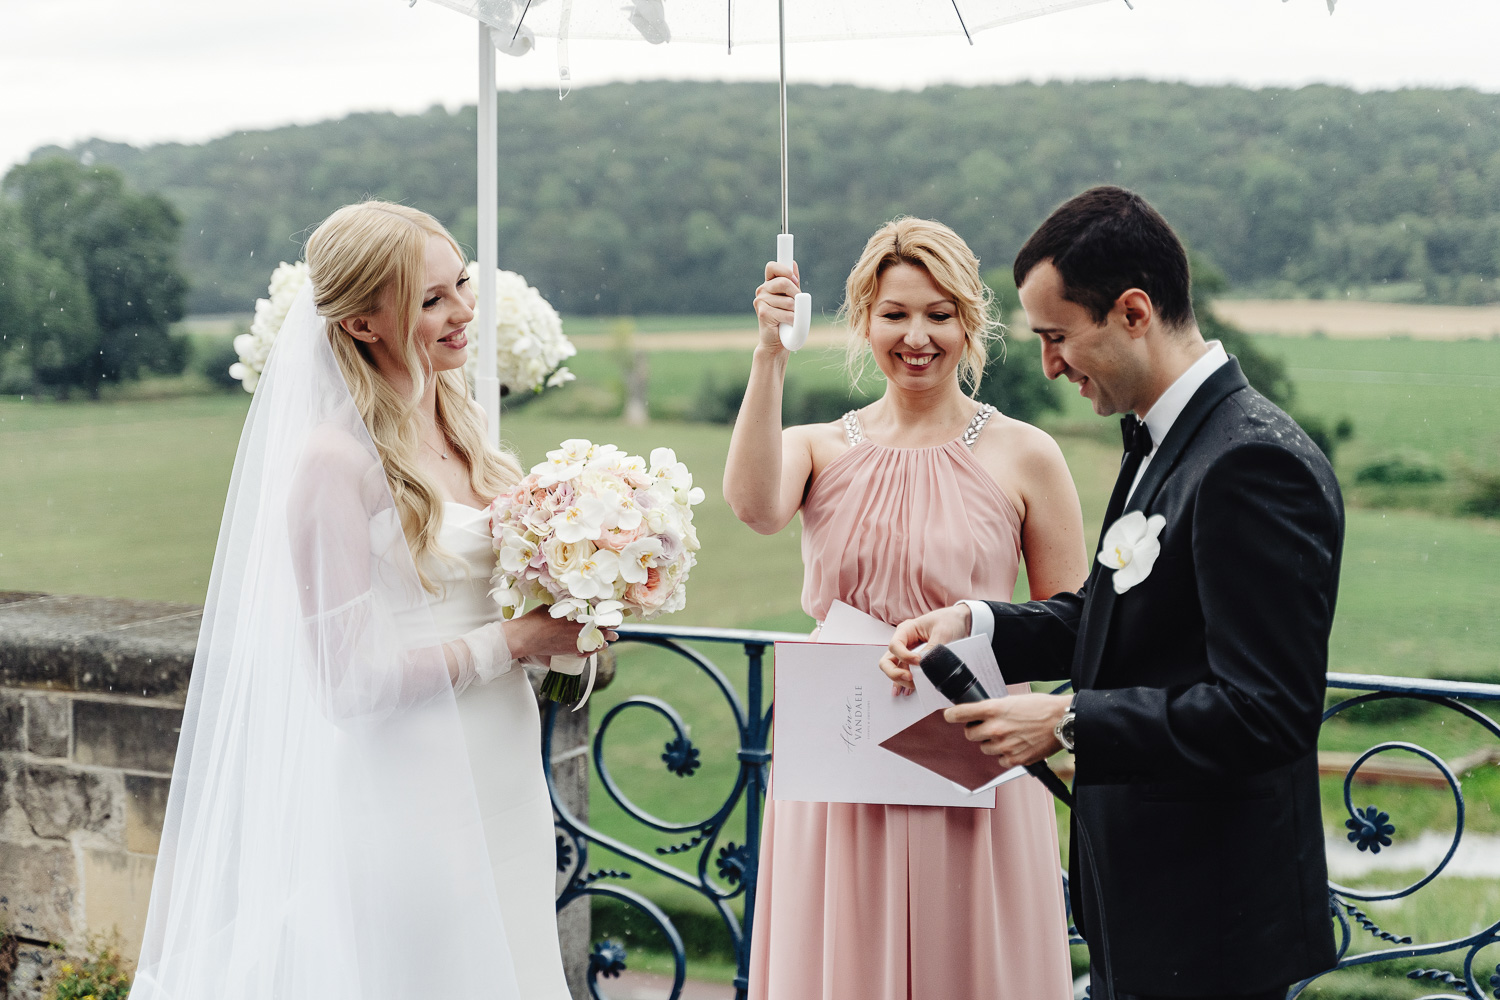 Weddingh знаменитость держит зонтик над парой и произносит речь, жених и невеста меняют клятвы. На заднем плане живописные виды на виноградники